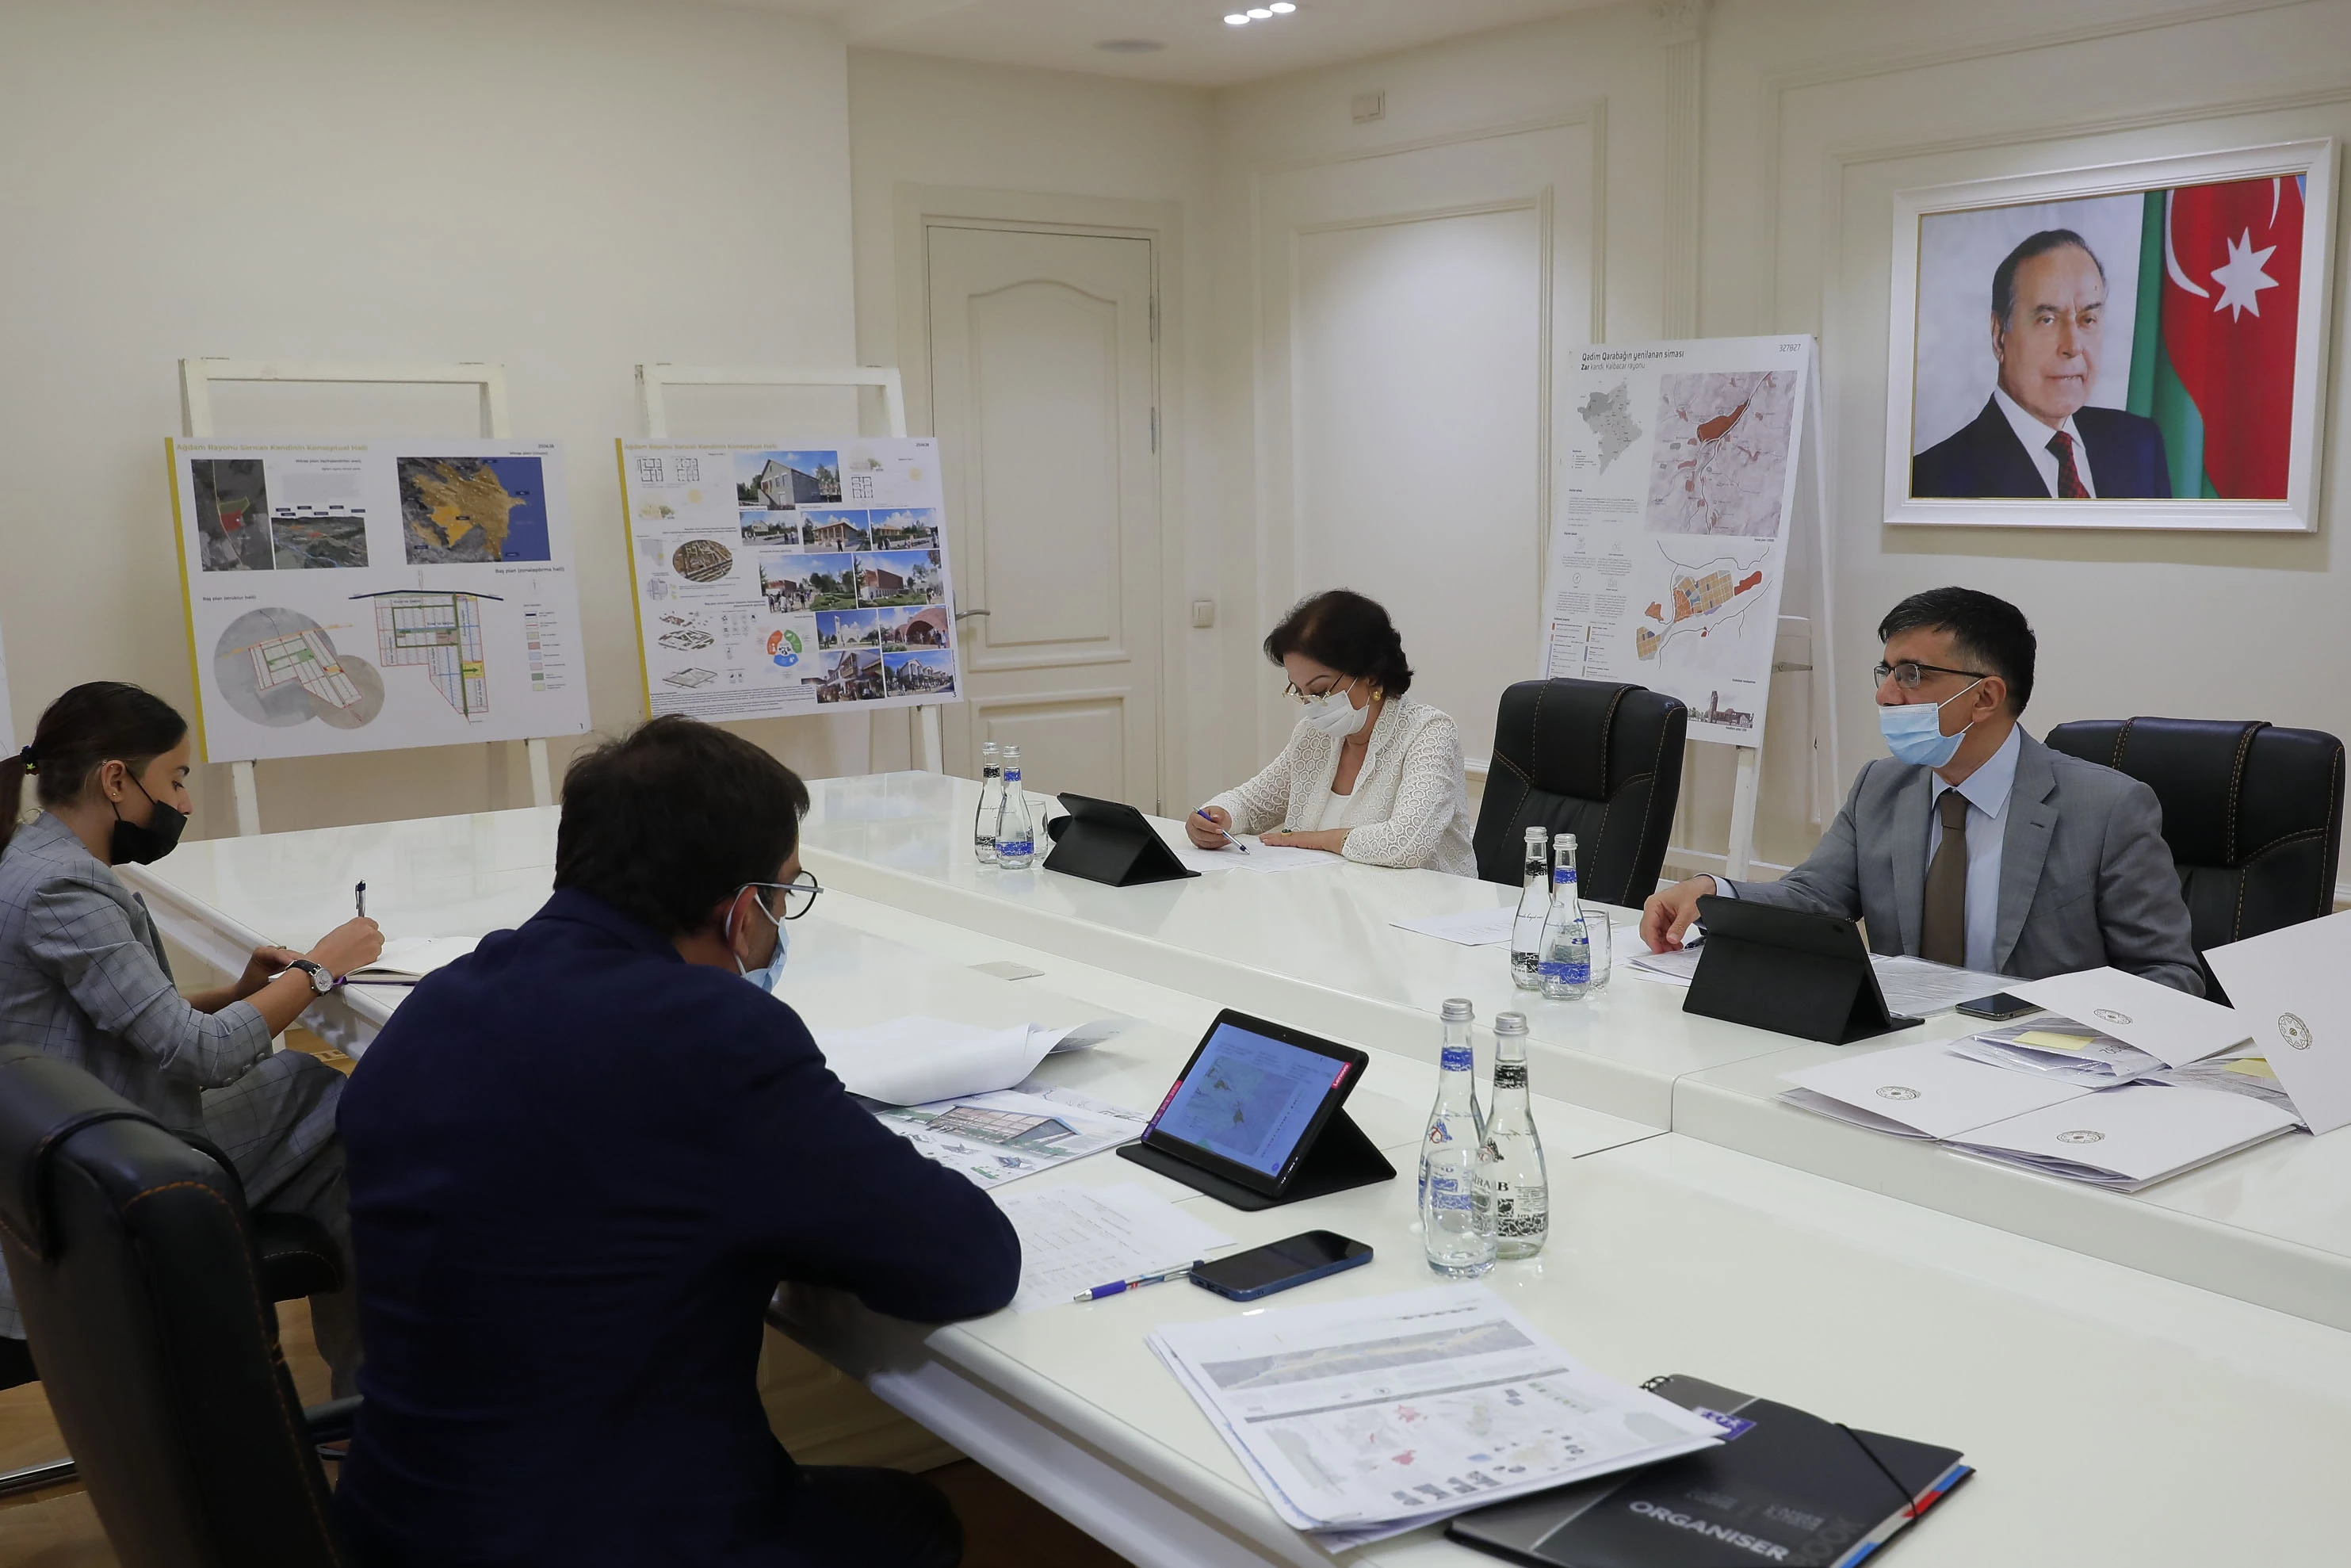 Завершился архитектурный конкурс «Обновляющийся облик Древнего Карабаха», проведенный по инициативе Государственного Комитета по Градостроительству и Архитектуре